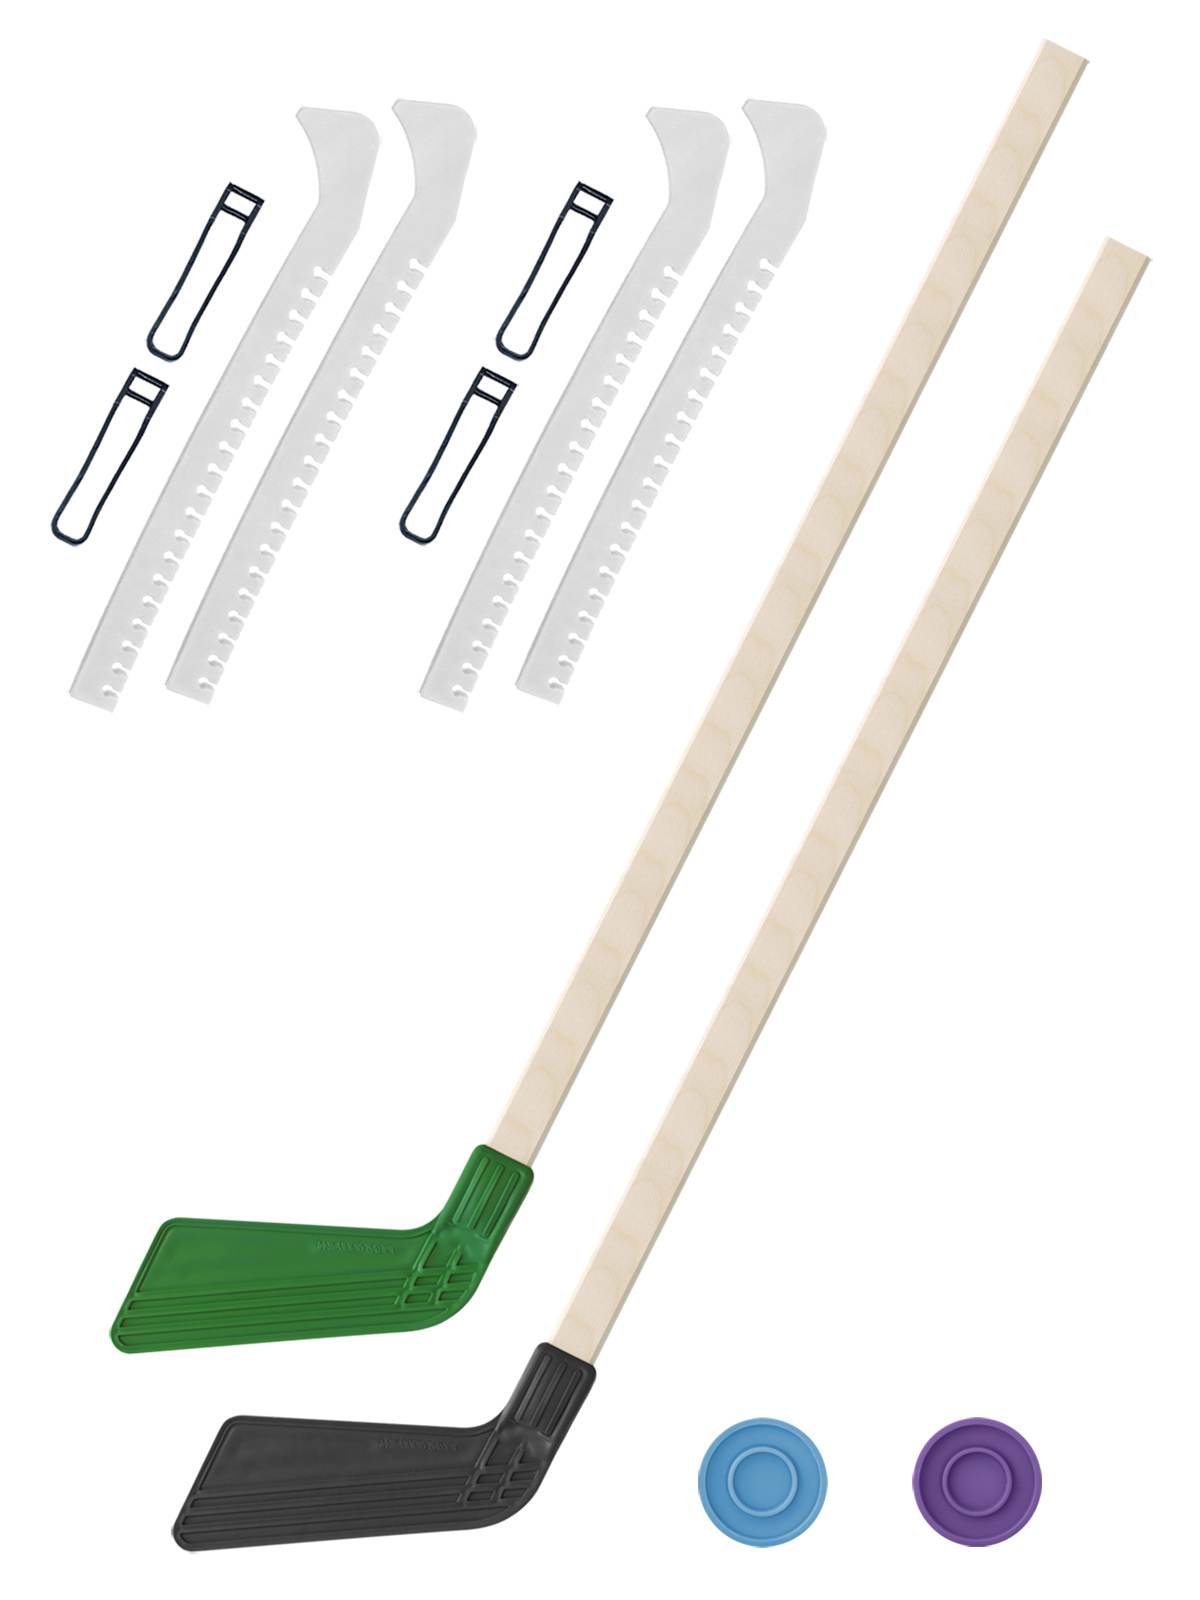 Хоккейный набор Задира-плюс клюшка детская(зел+чер)2шт+2шайбы+чехлы для коньков бел 2шт